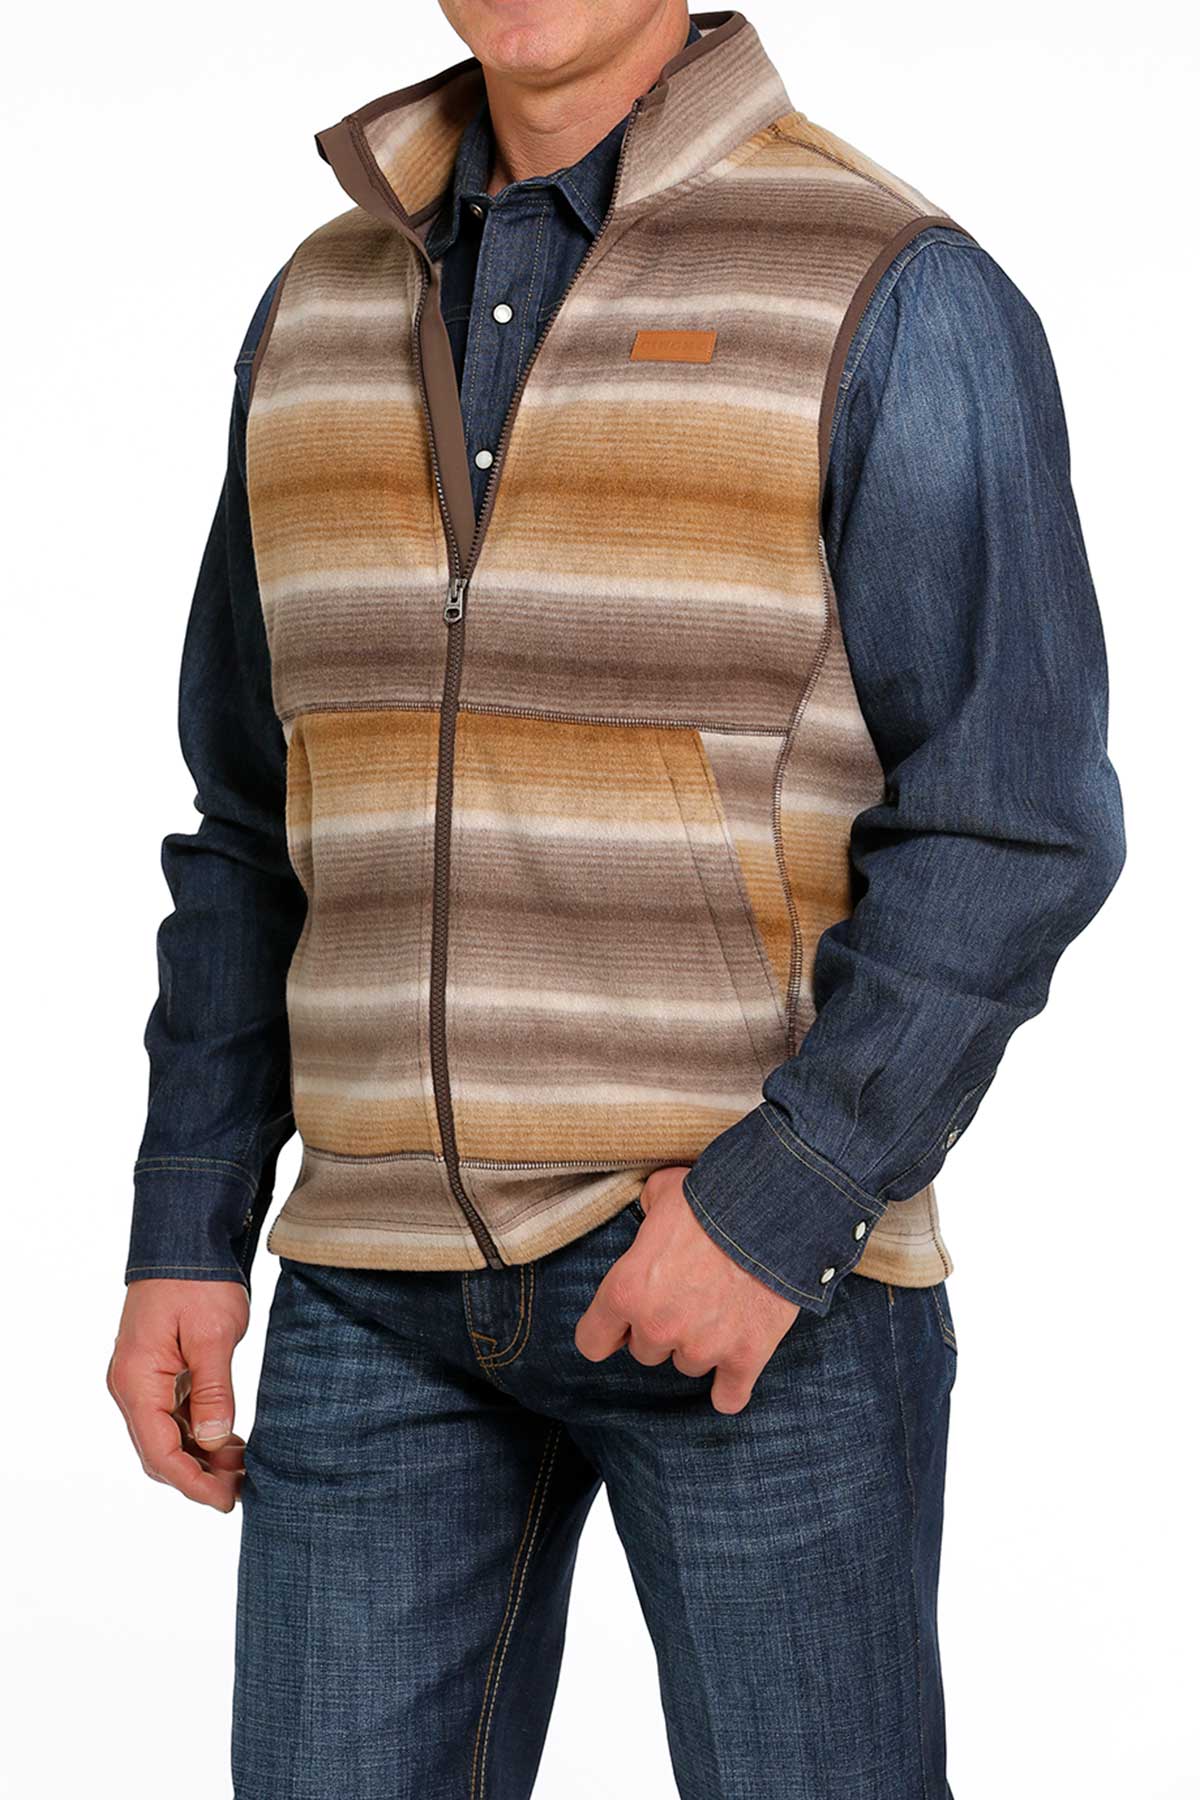 Tijdig vergeven vaardigheid Cinch' Men's Polar Fleece Vest - Brown – Trav's Outfitter